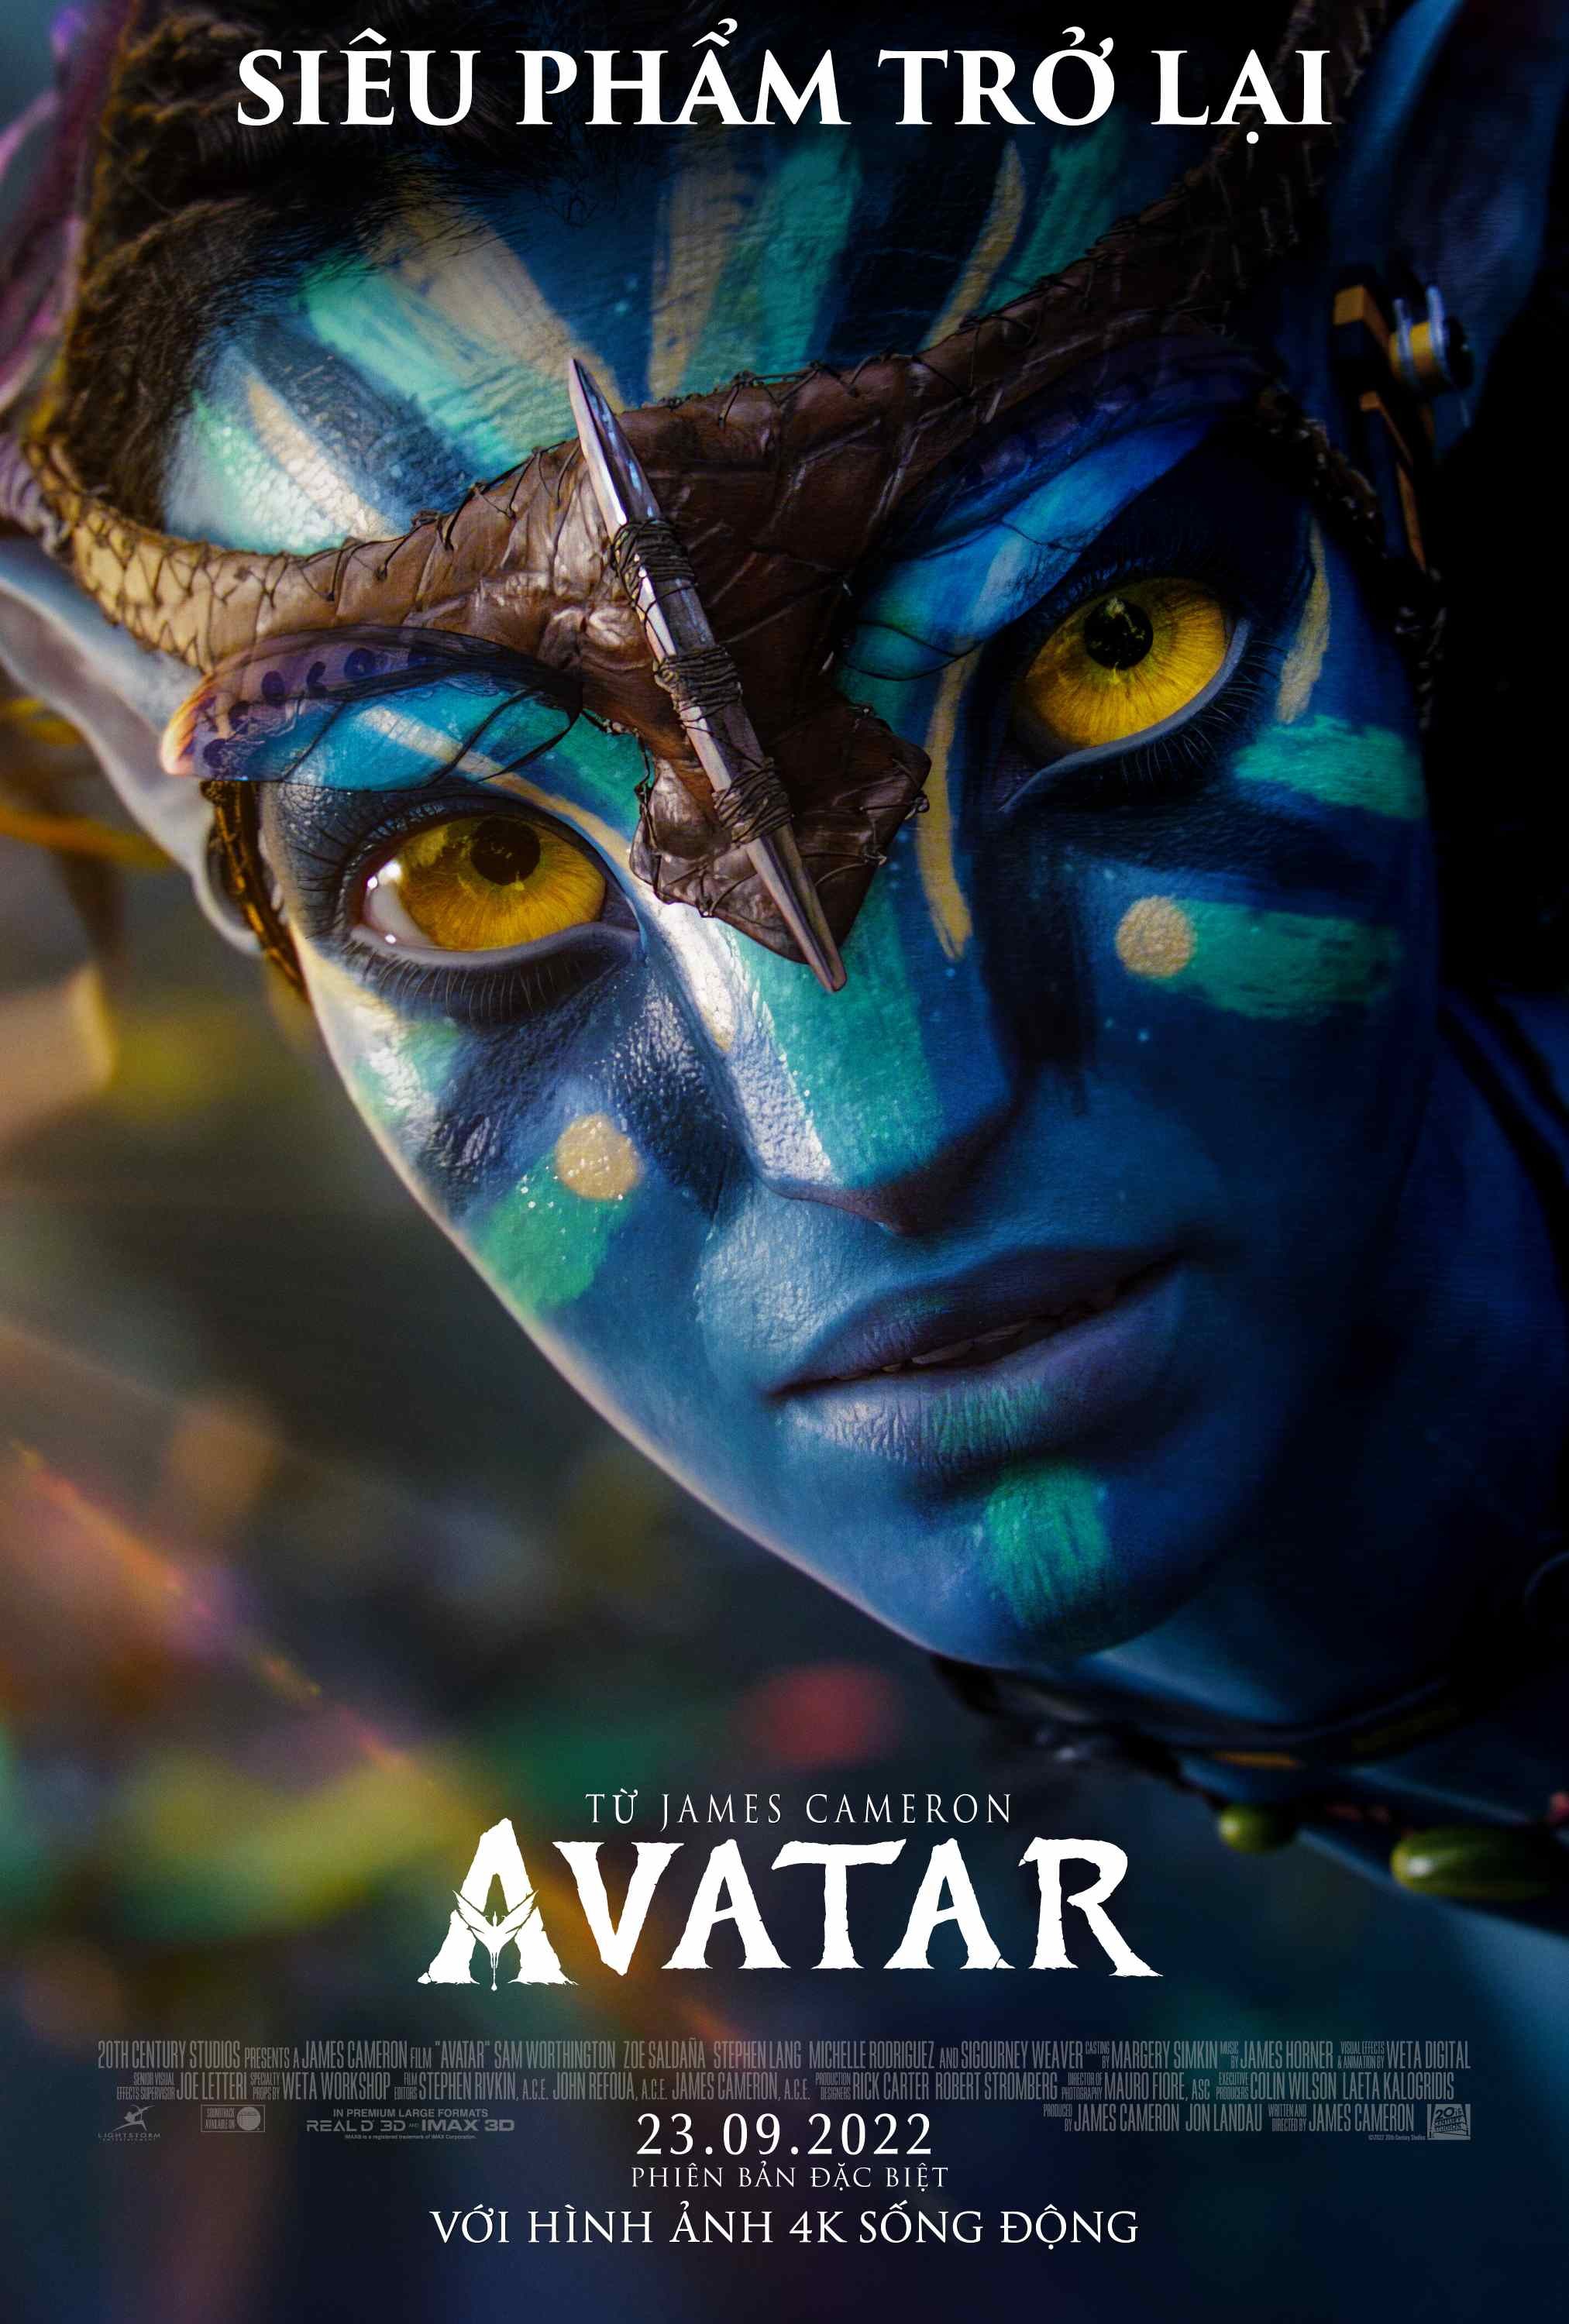 Avatar  15 năm cho một giấc mơ vĩ đại  VnExpress Giải trí